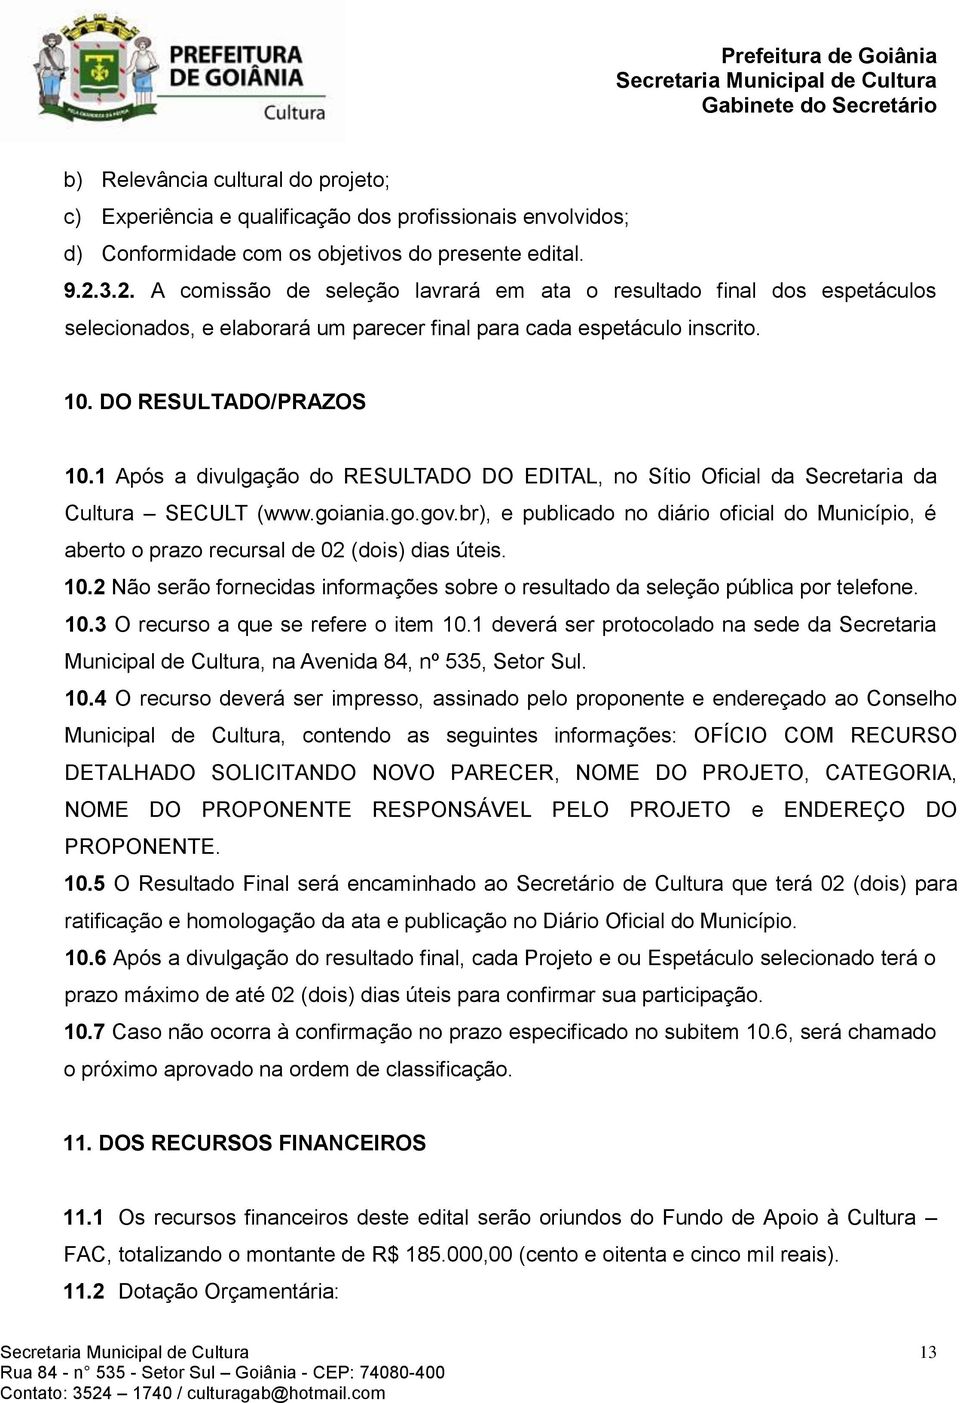 1 Após a divulgação do RESULTADO DO EDITAL, no Sítio Oficial da Secretaria da Cultura SECULT (www.goiania.go.gov.